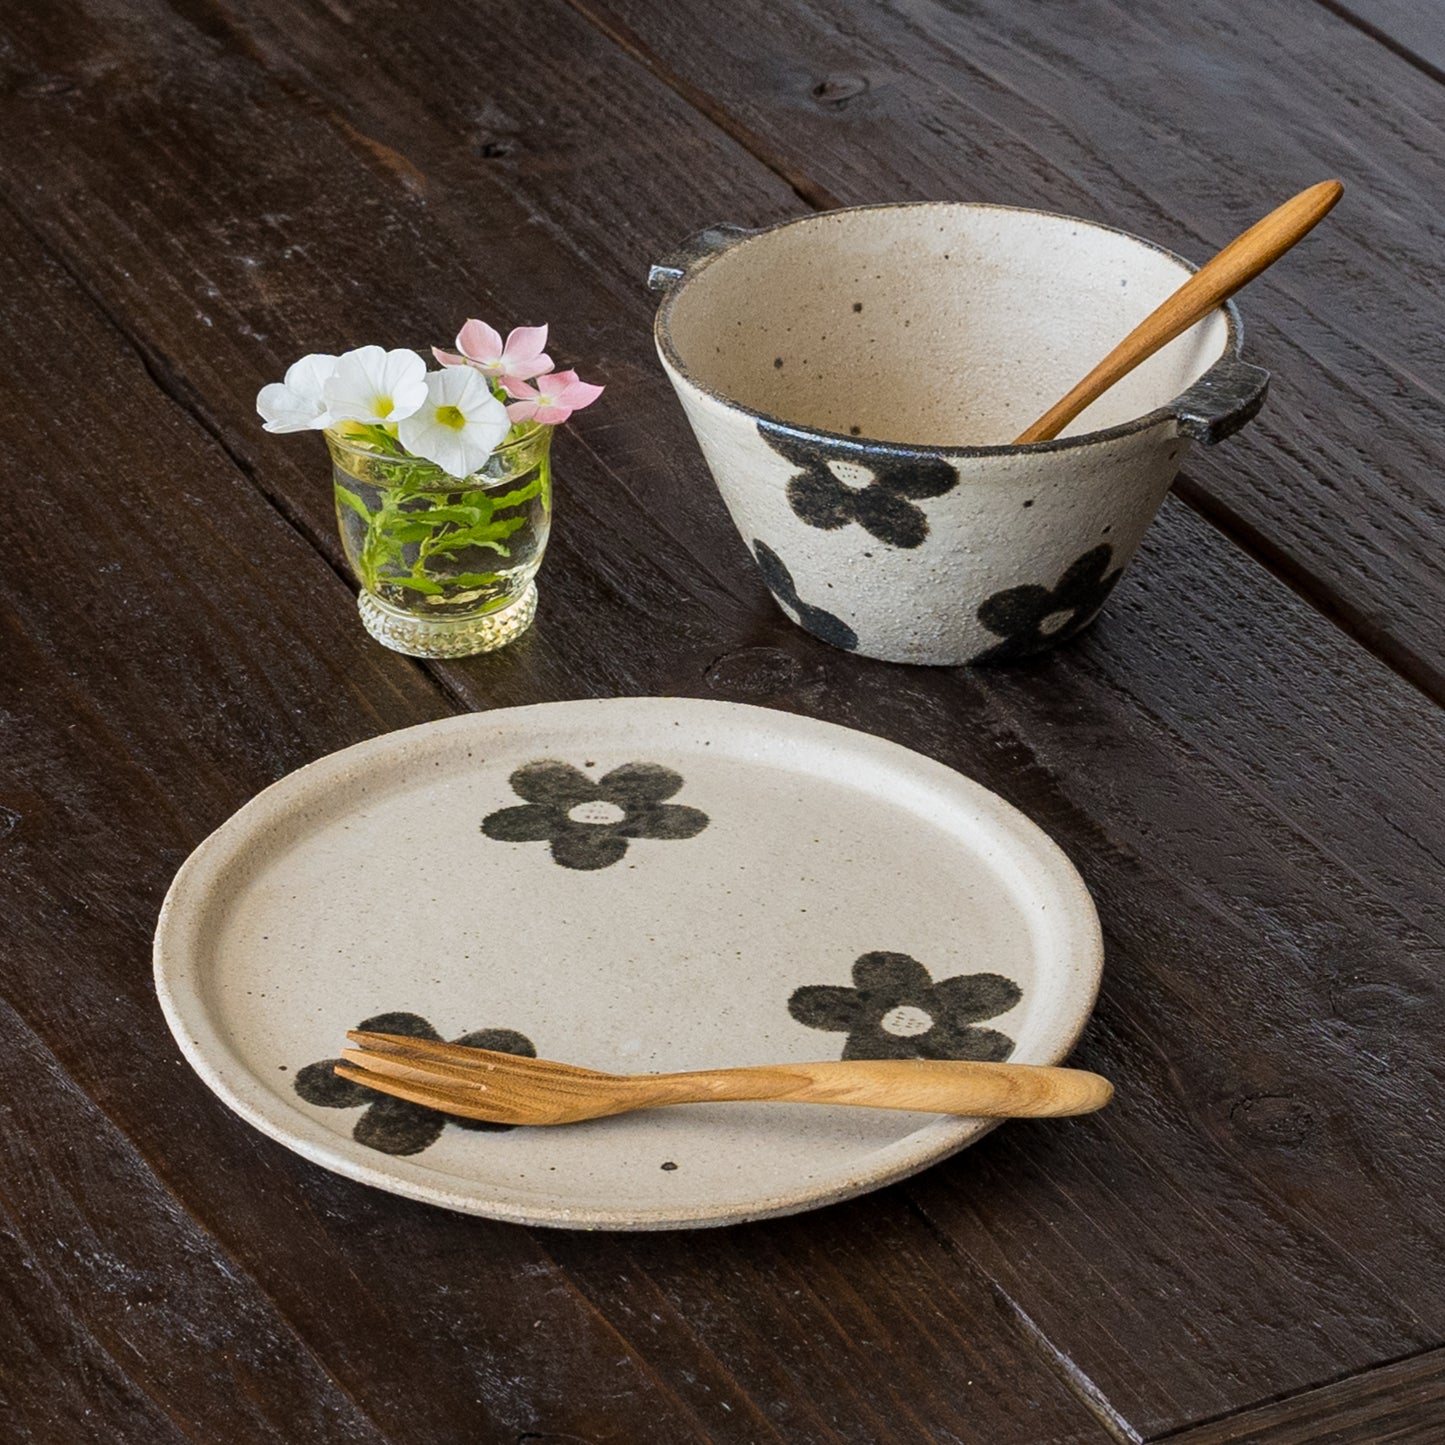 朝食の器に使いたくなる岡村朝子さんのお花模様の丸皿とスープボウル